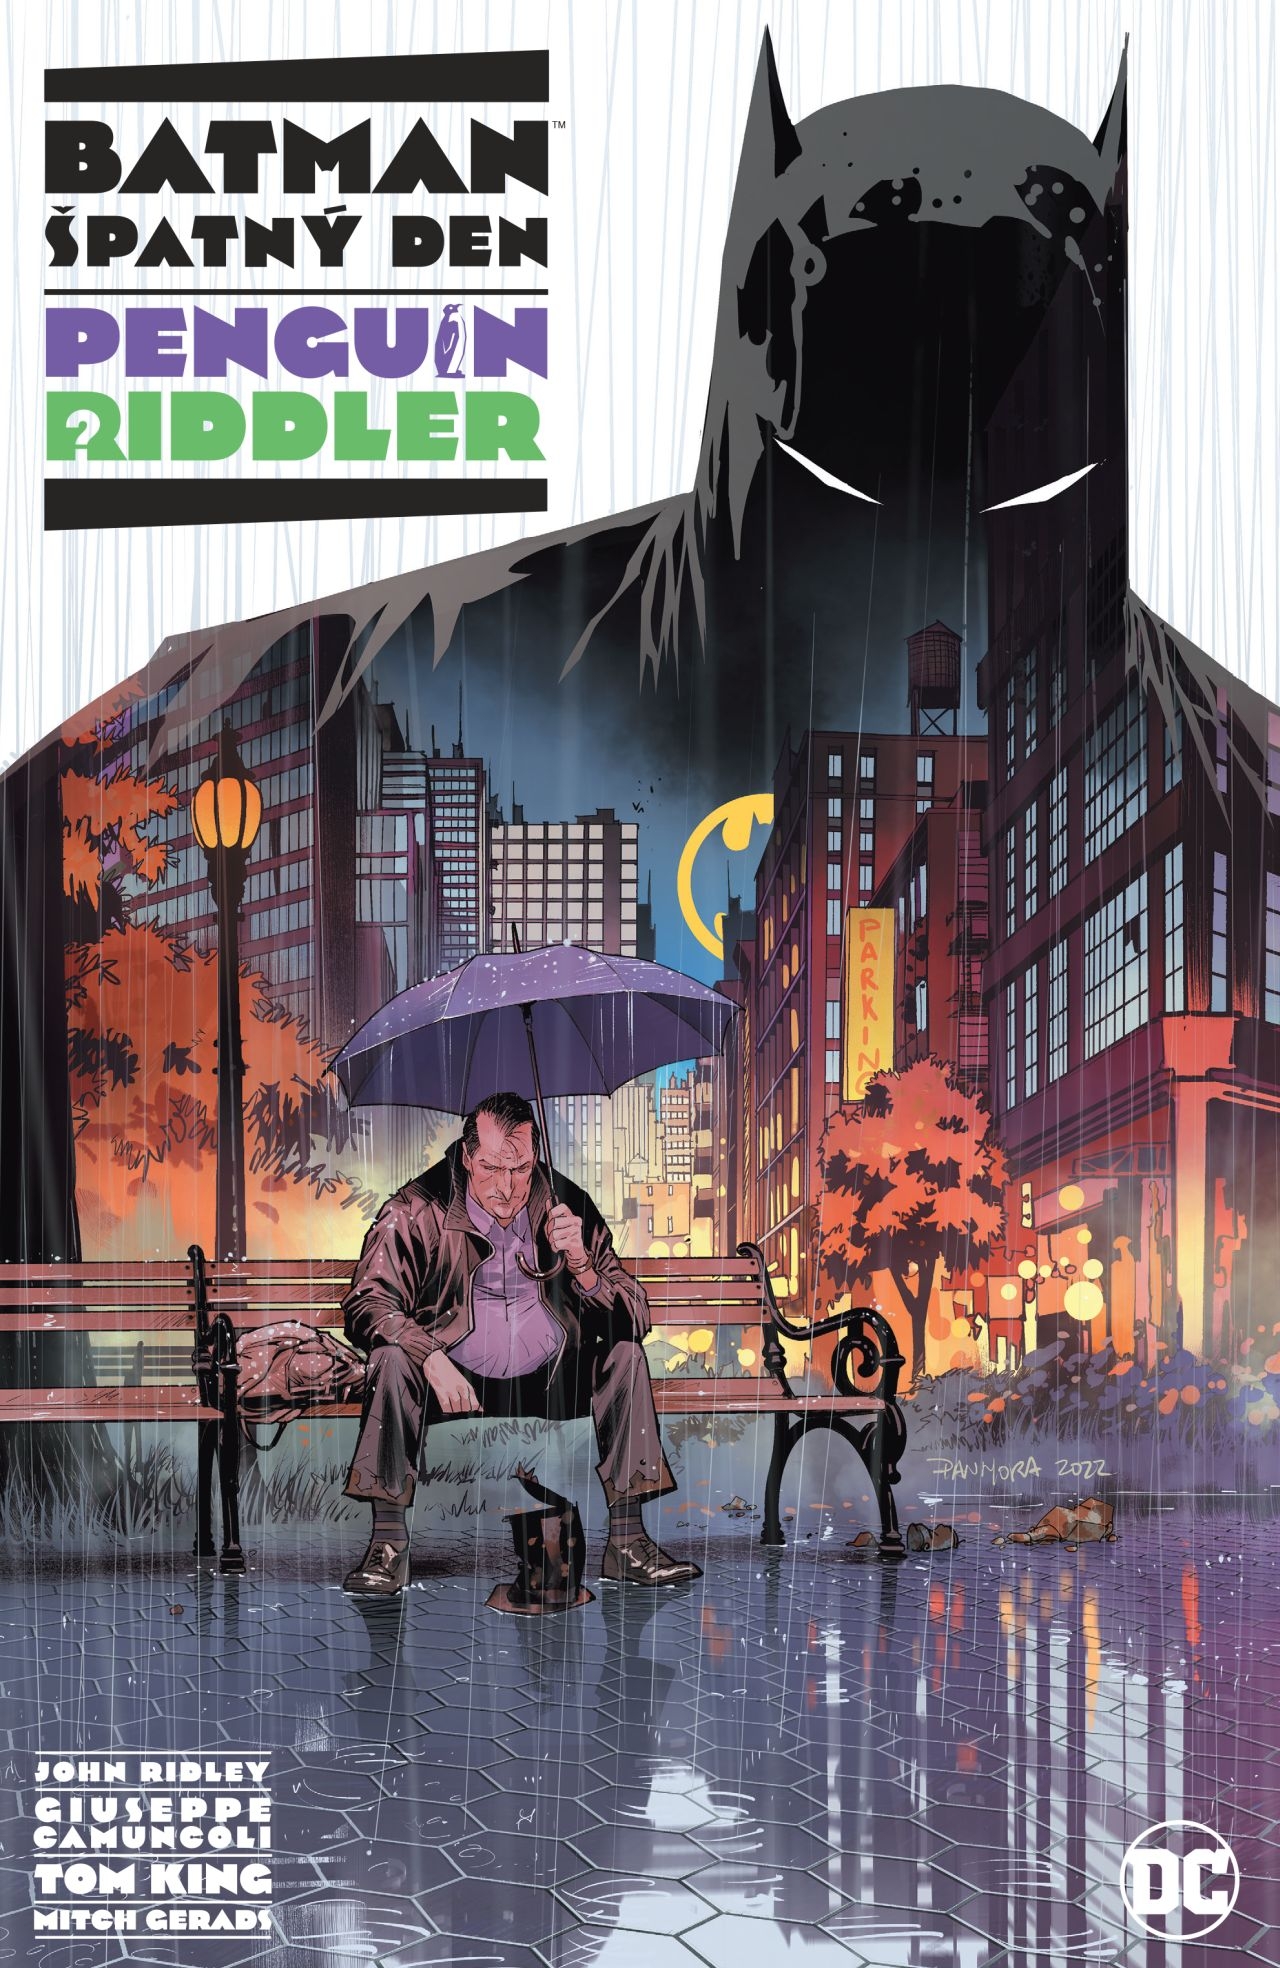 Batman: Špatný den -  Penguin / Riddler [King Tom, Ridley John]